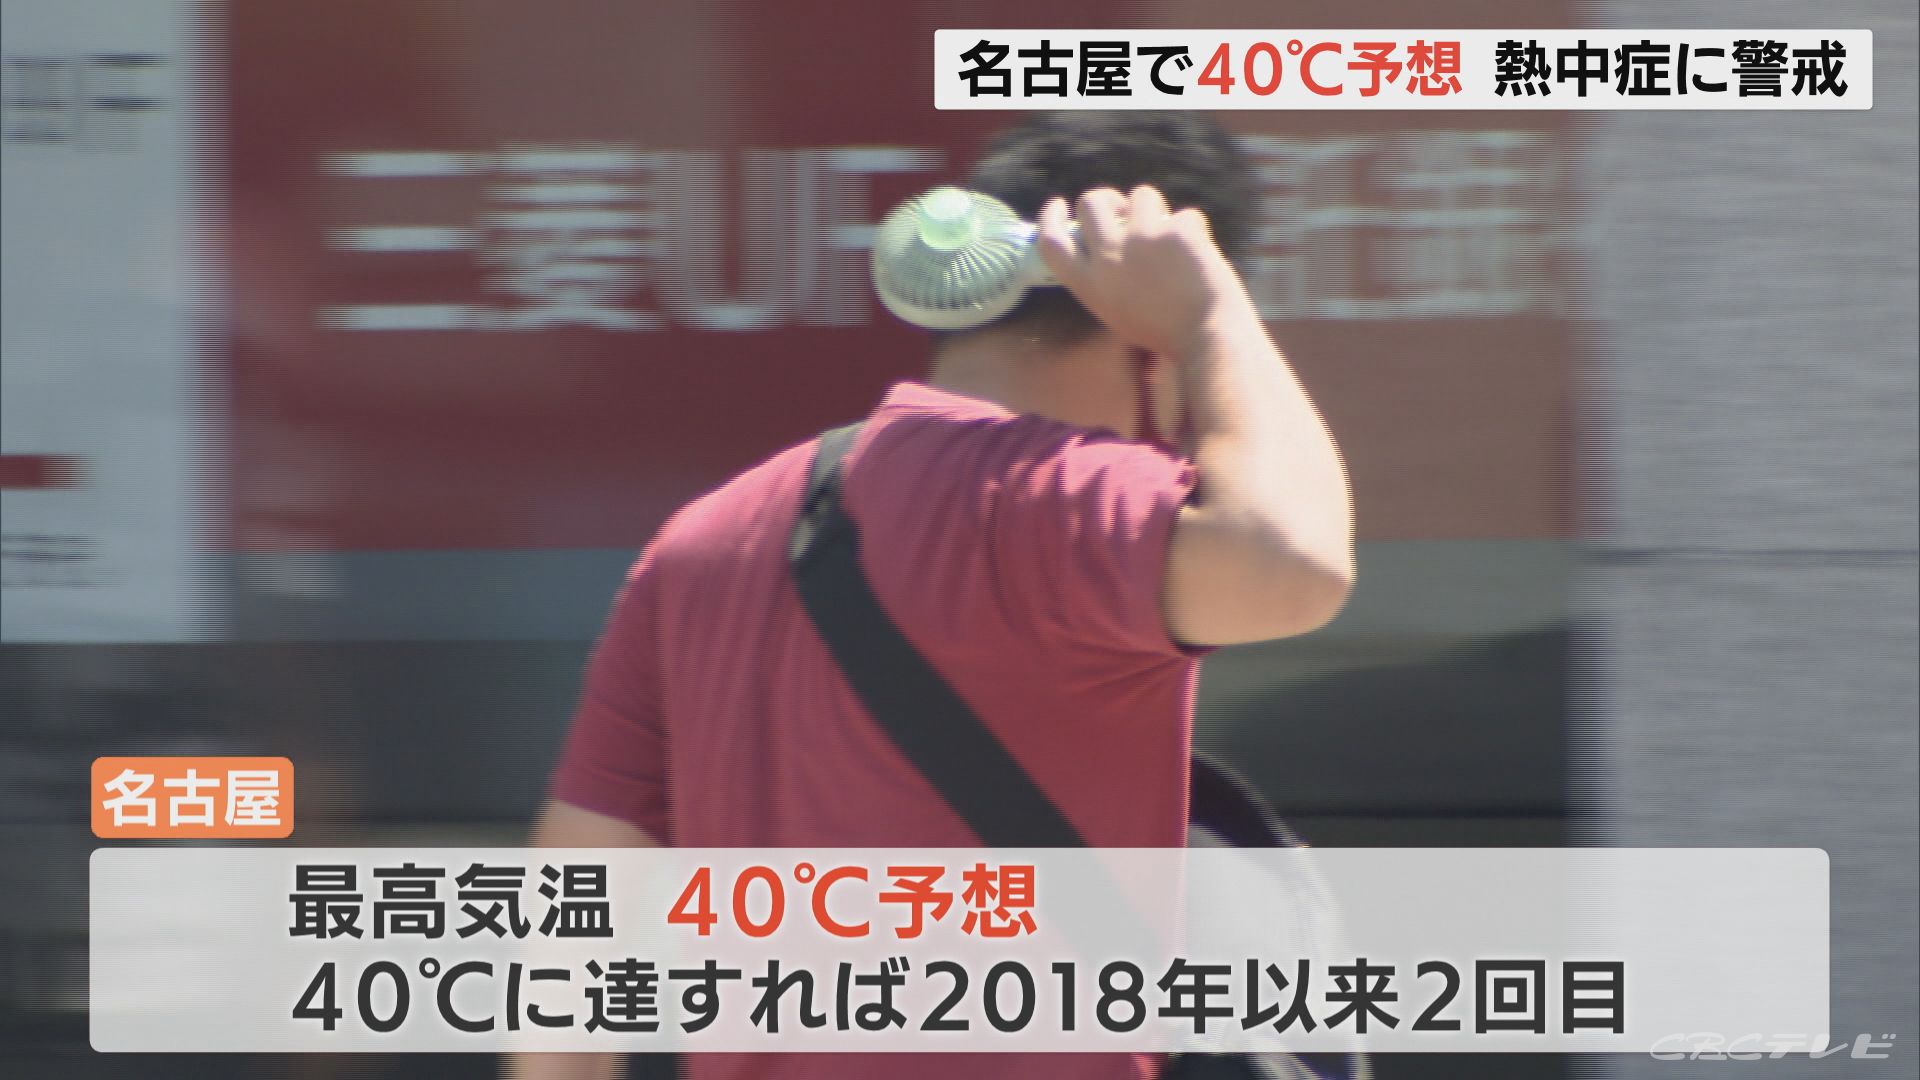 名古屋の予想最高気温40℃ 東海地方「危険な暑さ」 外出なるべく避け 適切な冷房の使用や水分補給など熱中症対策を　 